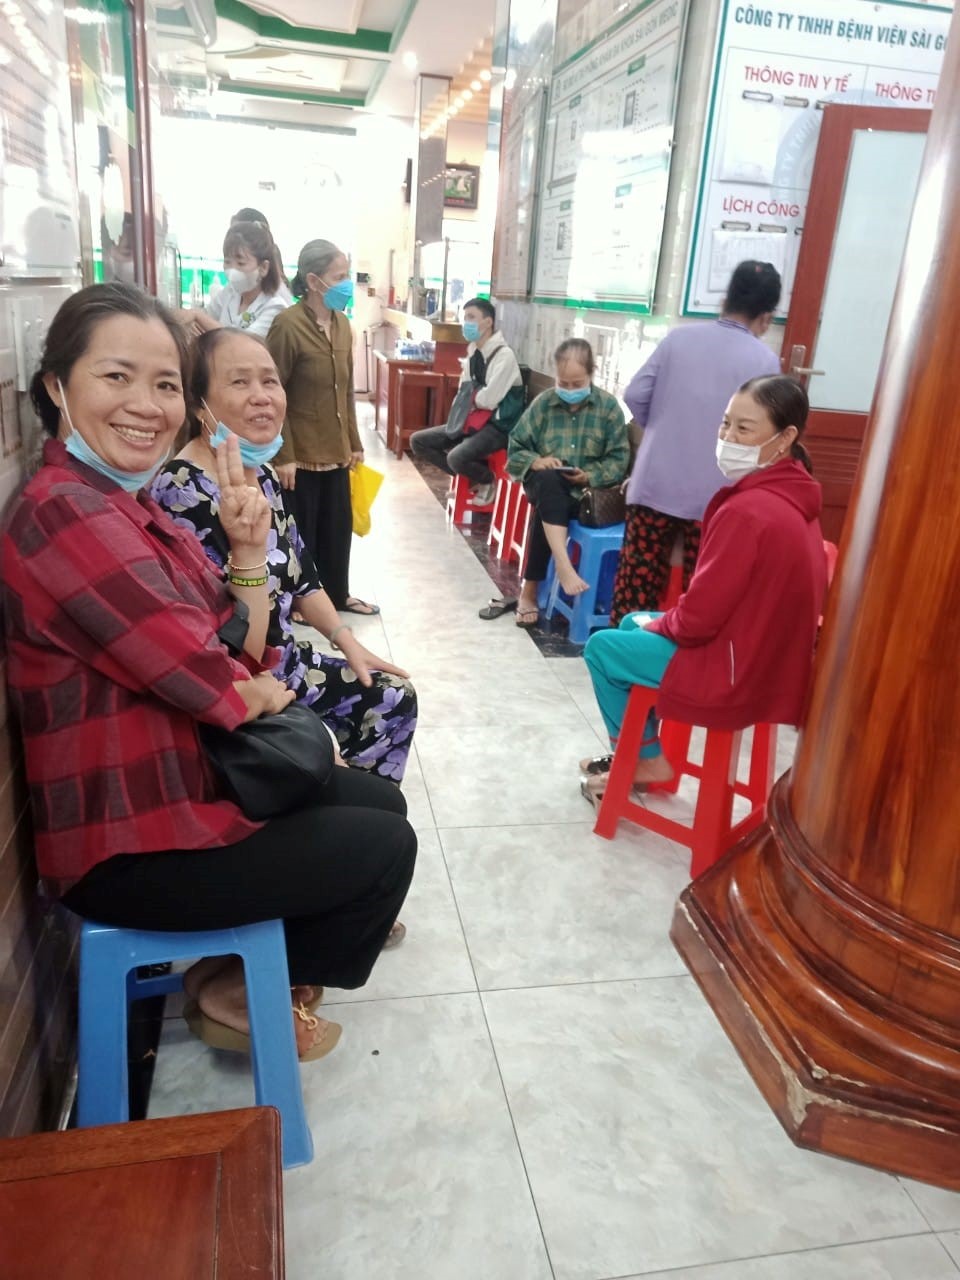 Hội LHPN xã Tân phối hợp với Phòng khám đa khoa Sài gòn Medic Bàu Bàng khám bệnh, cấp phát thuốc miễn phí cho cán bộ, hội viên phụ nữ.